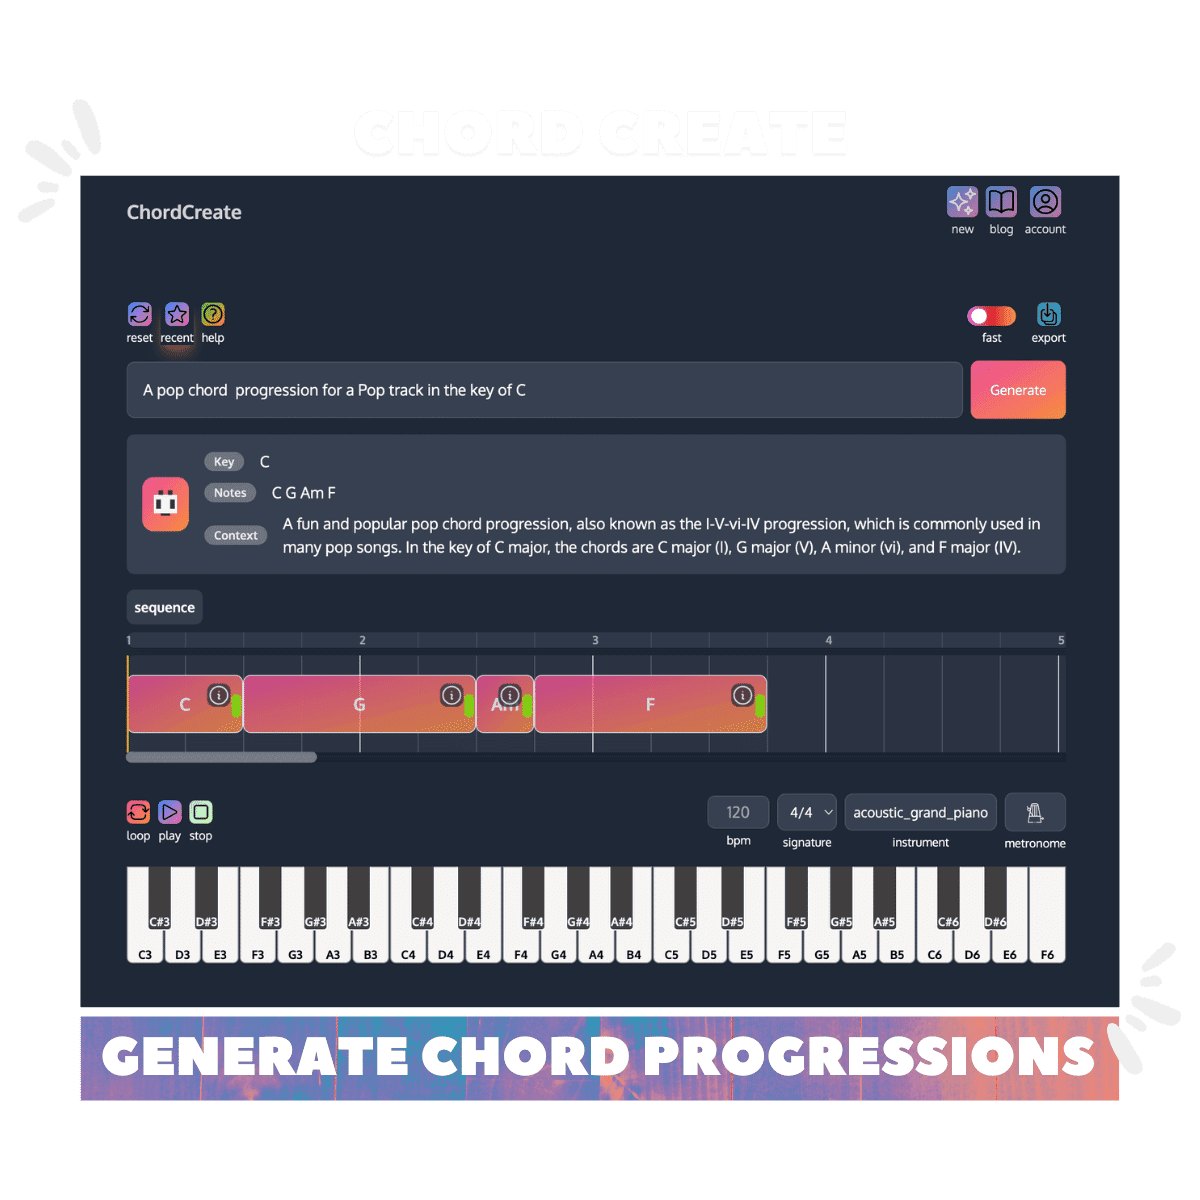 chord-create-generate-chords